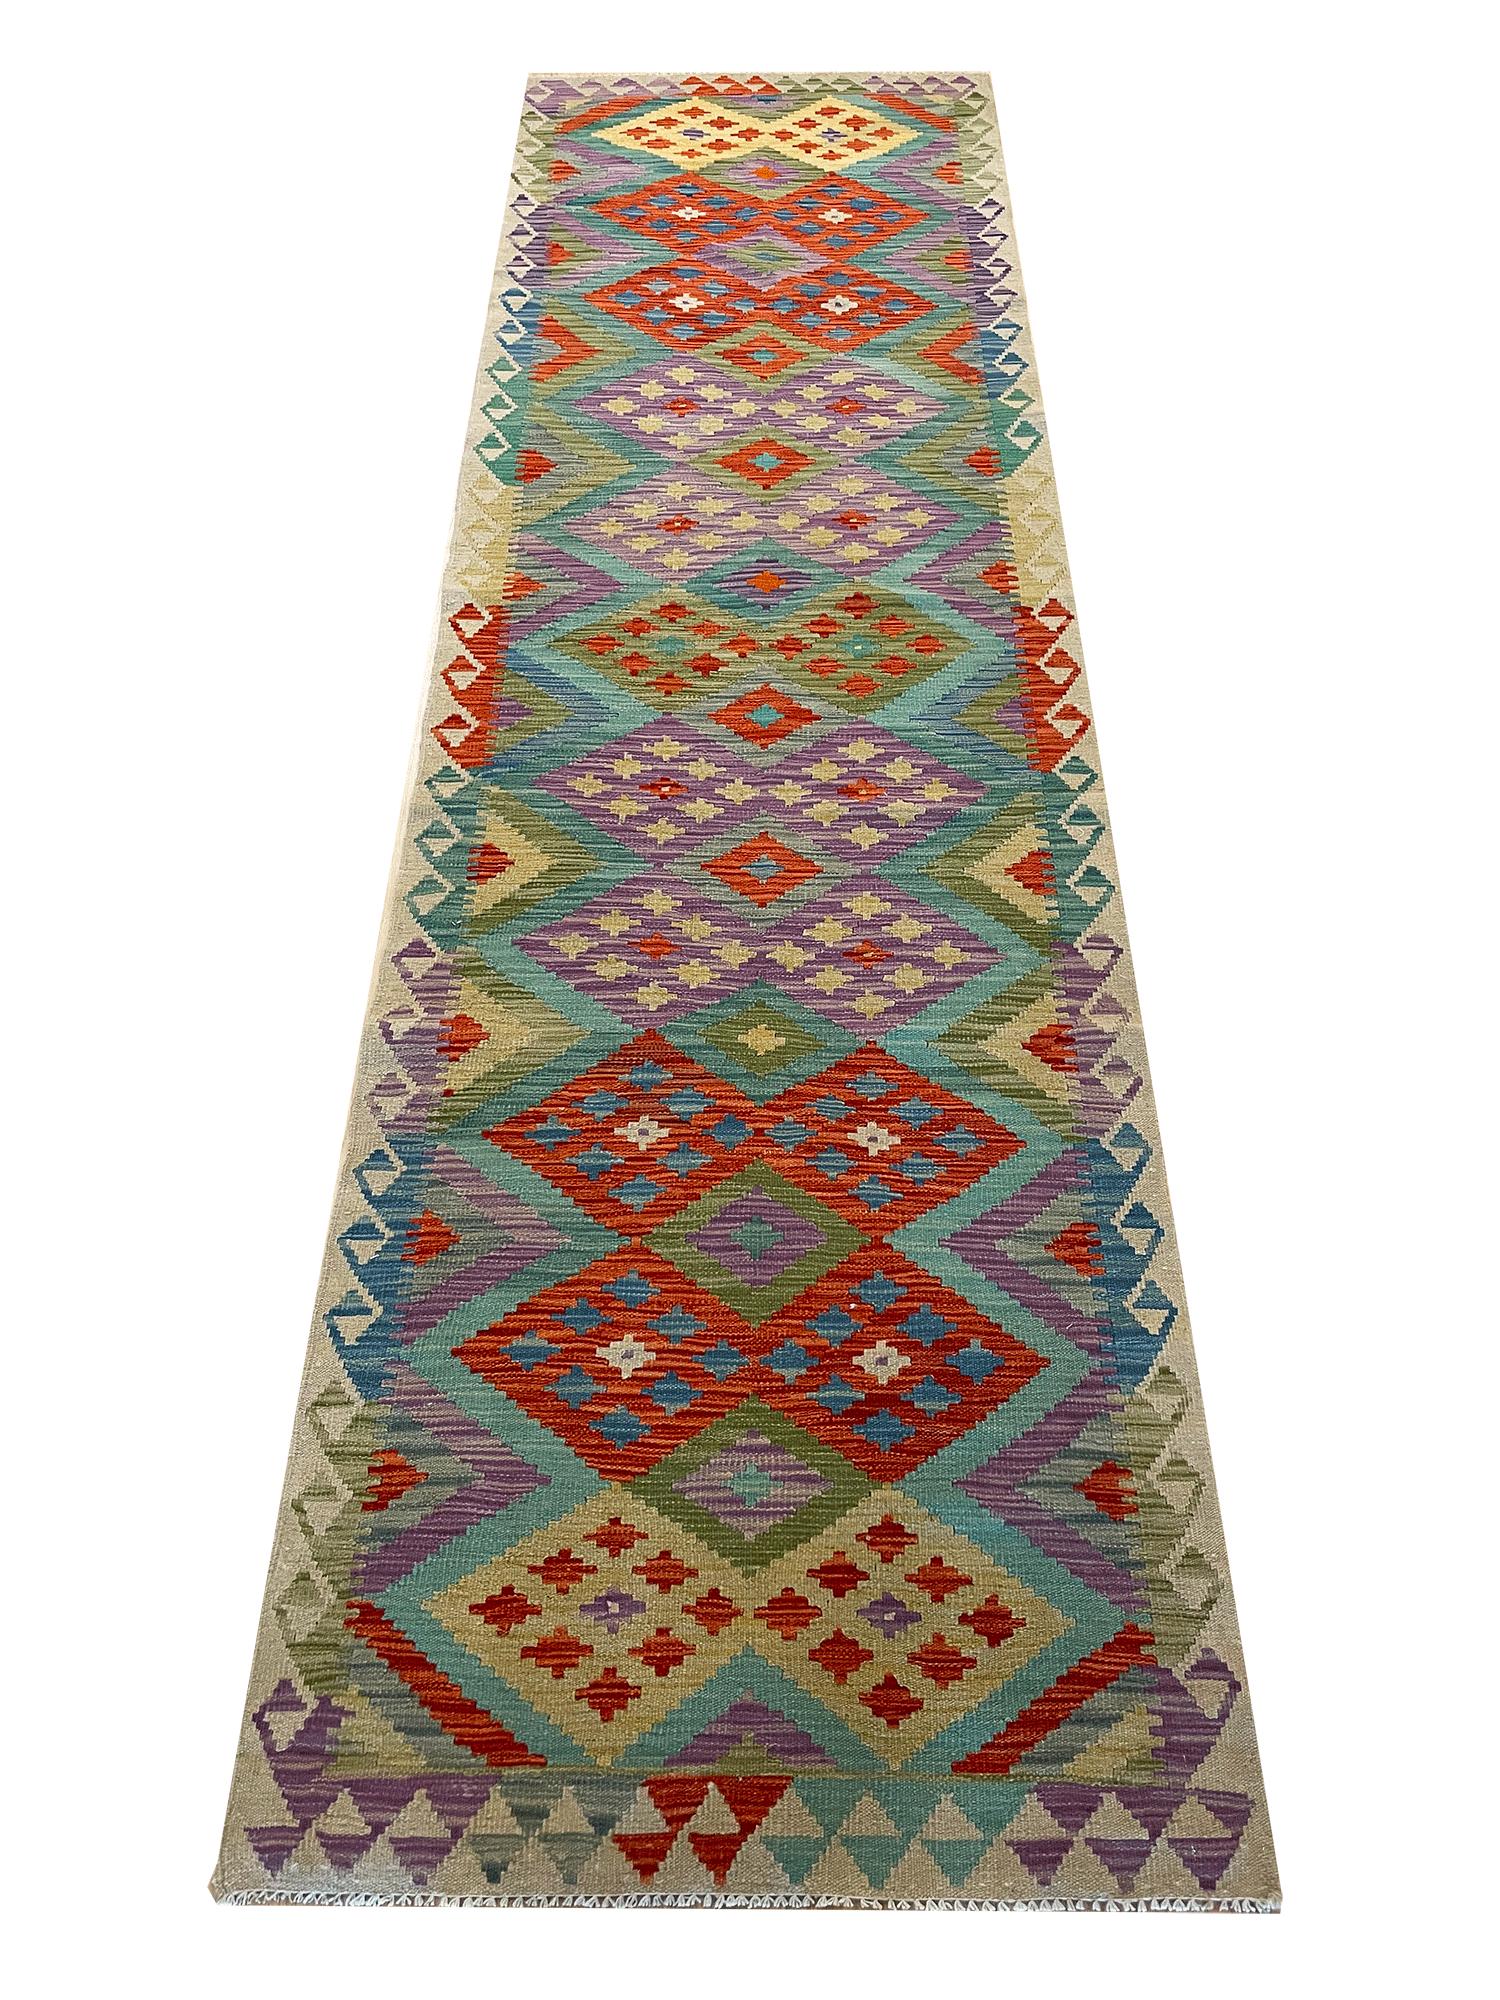 Qualité fantastique, réversible, tout en laine avec des teintures végétales.

Kilim, un mot d'origine turque, désigne un textile aux multiples usages produit par l'une des nombreuses techniques de tissage à plat. Ils ont un héritage commun ou